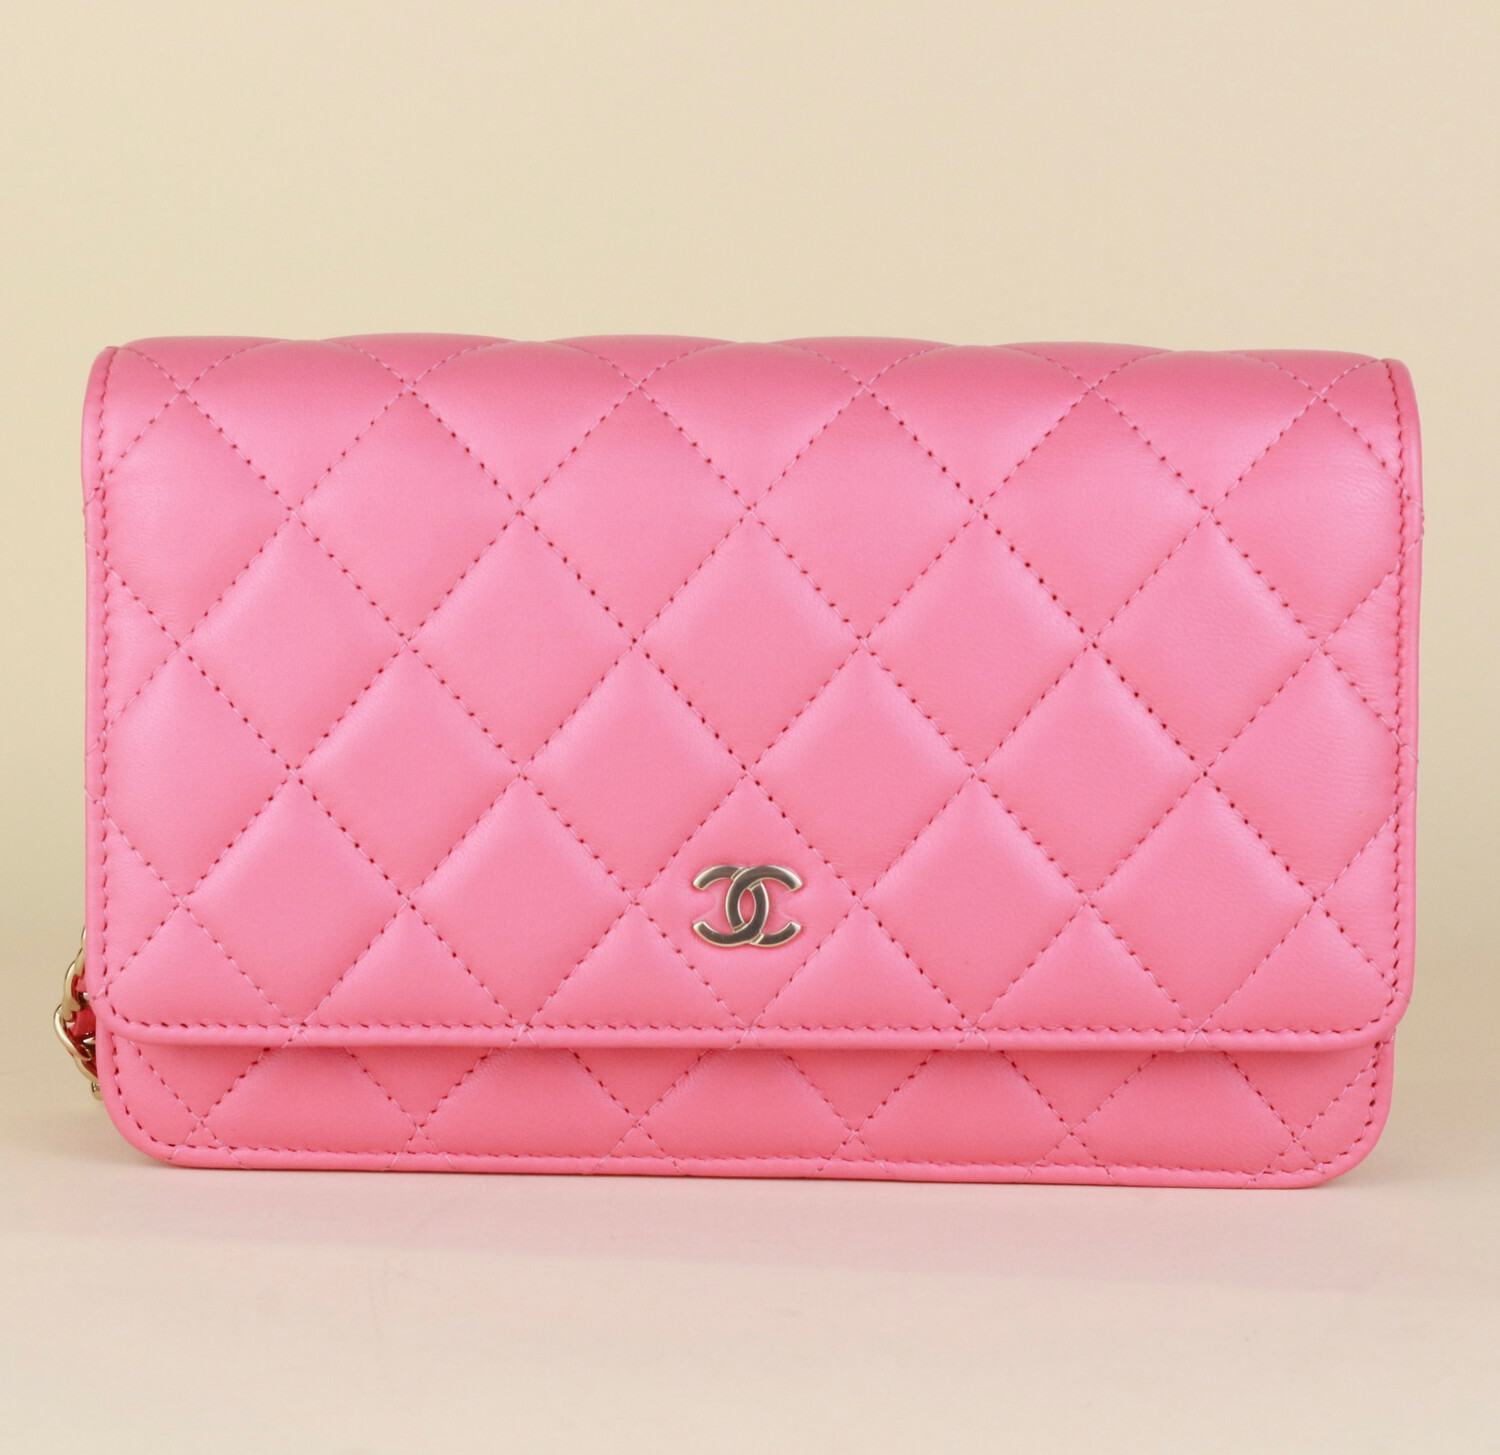 Chanel wallet on chain pink lambskin